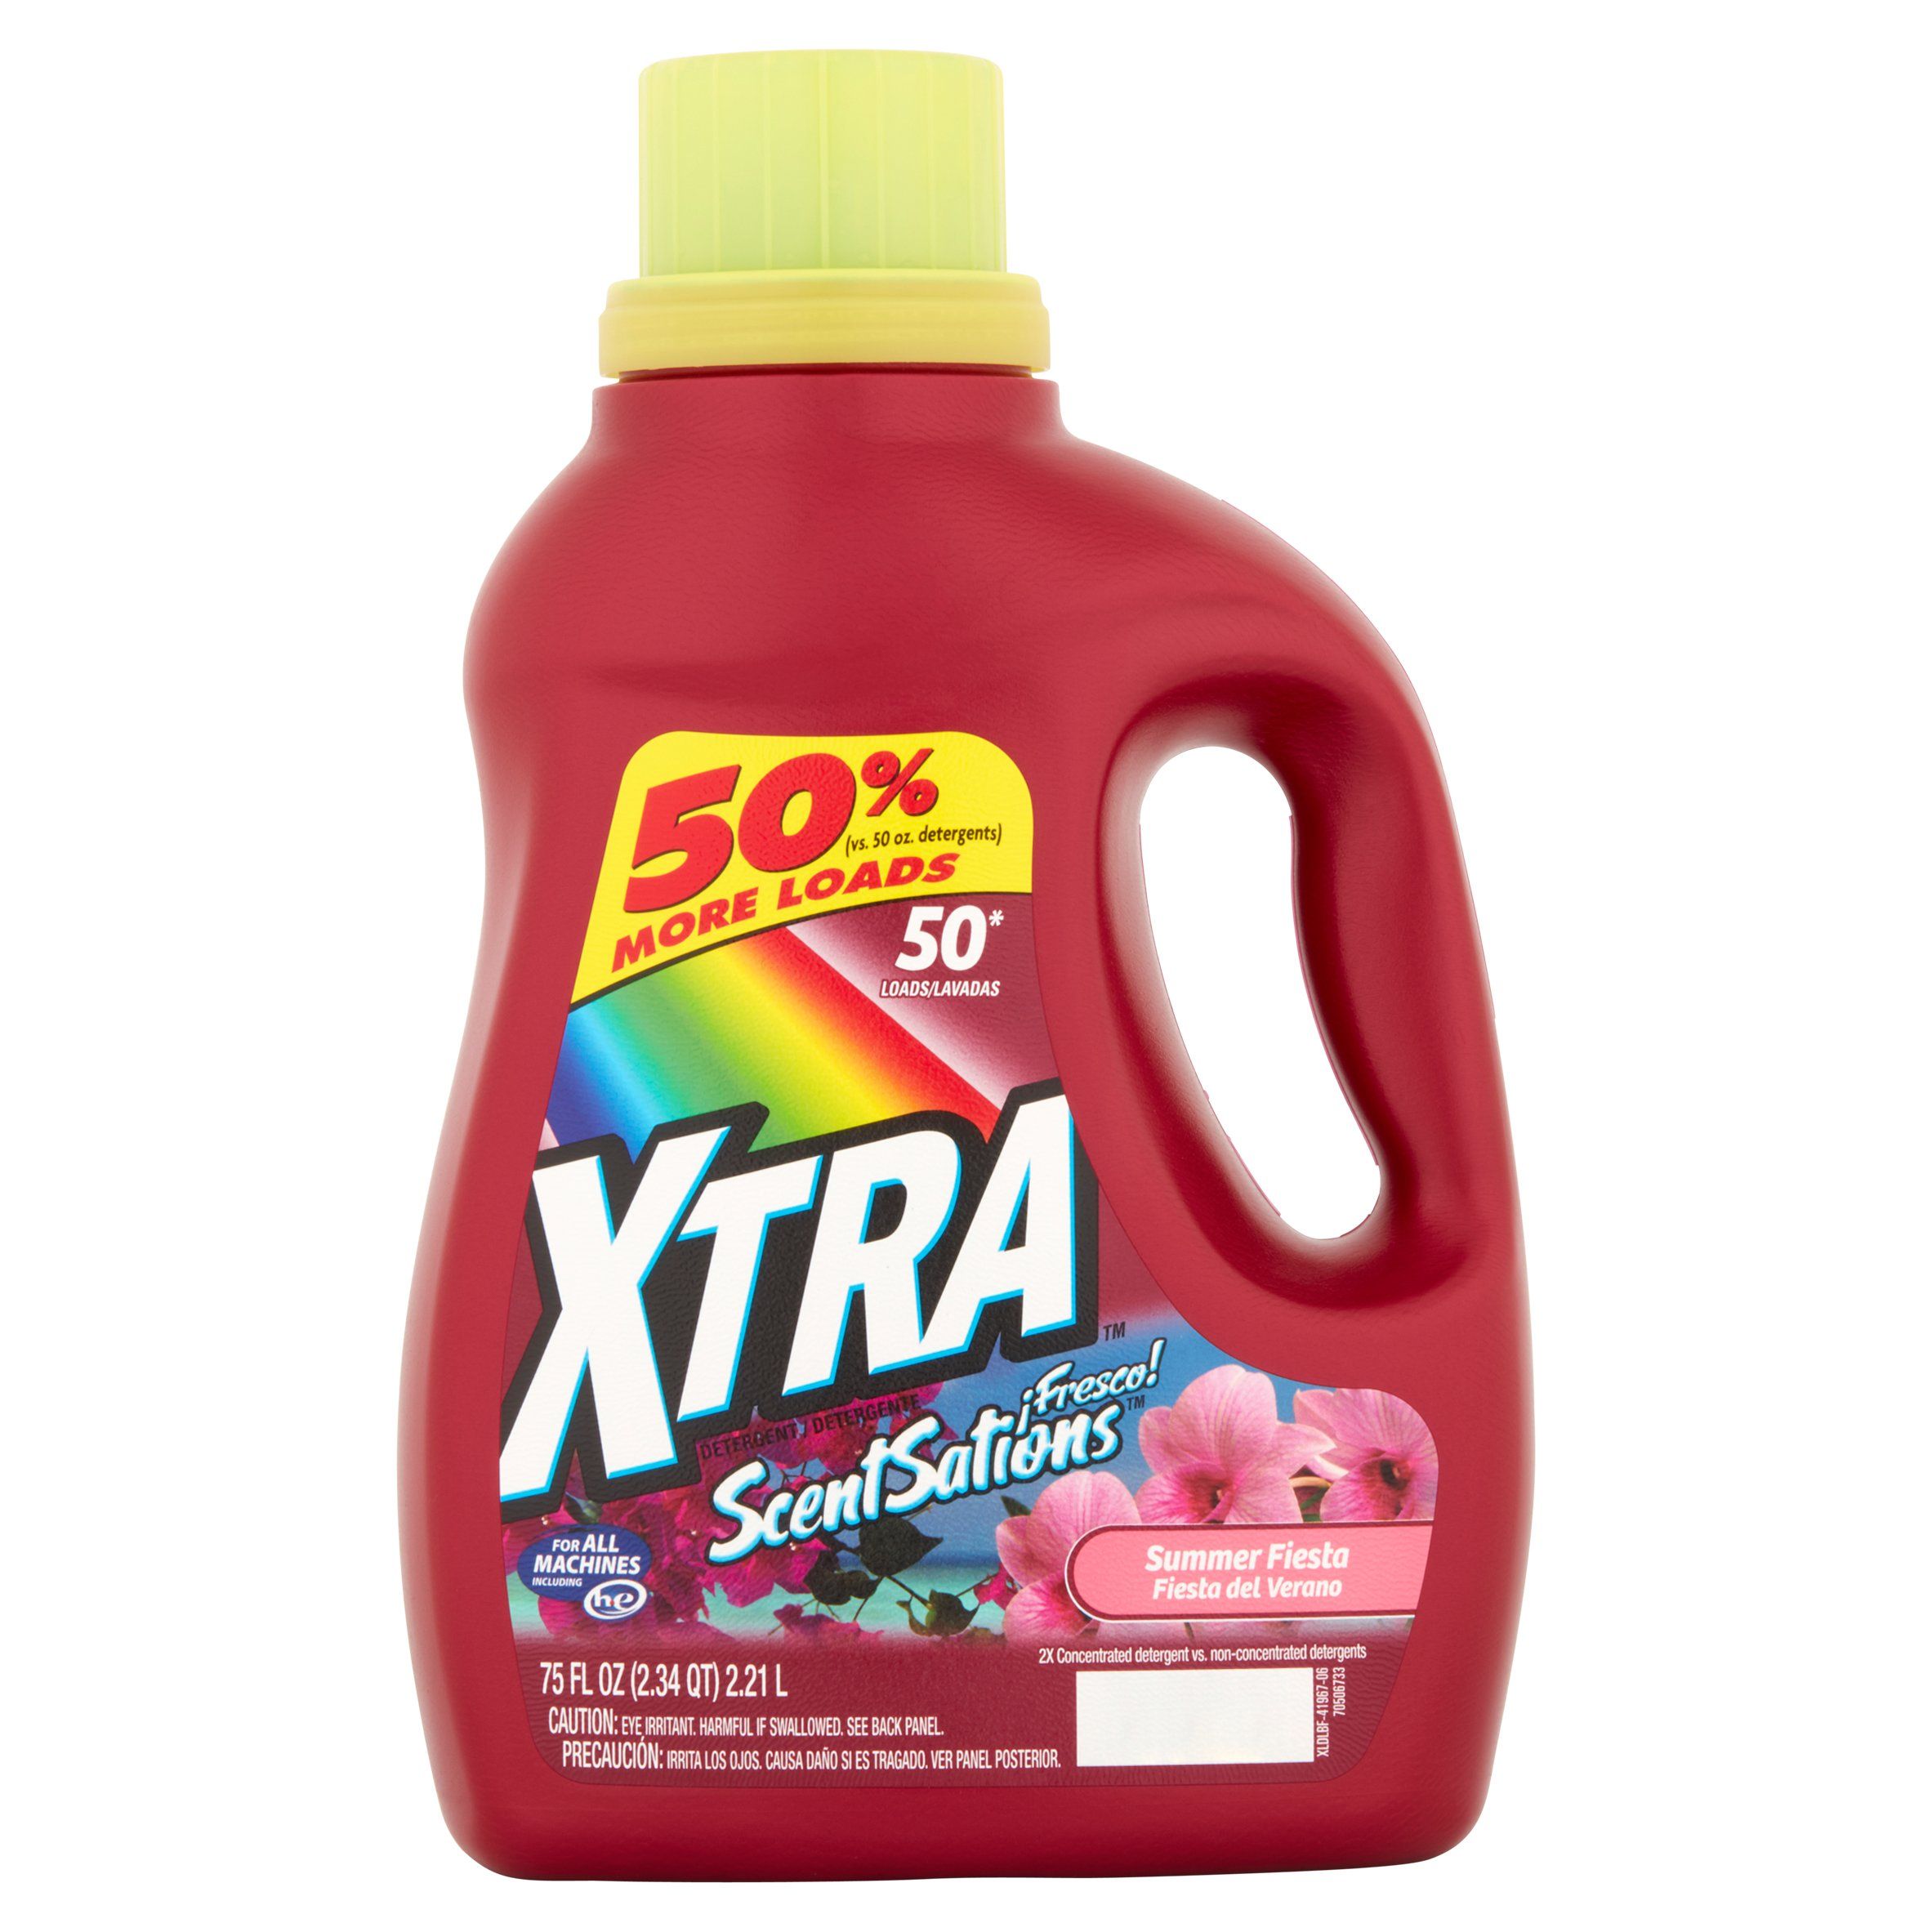 Xtra Scentsations Detergetn